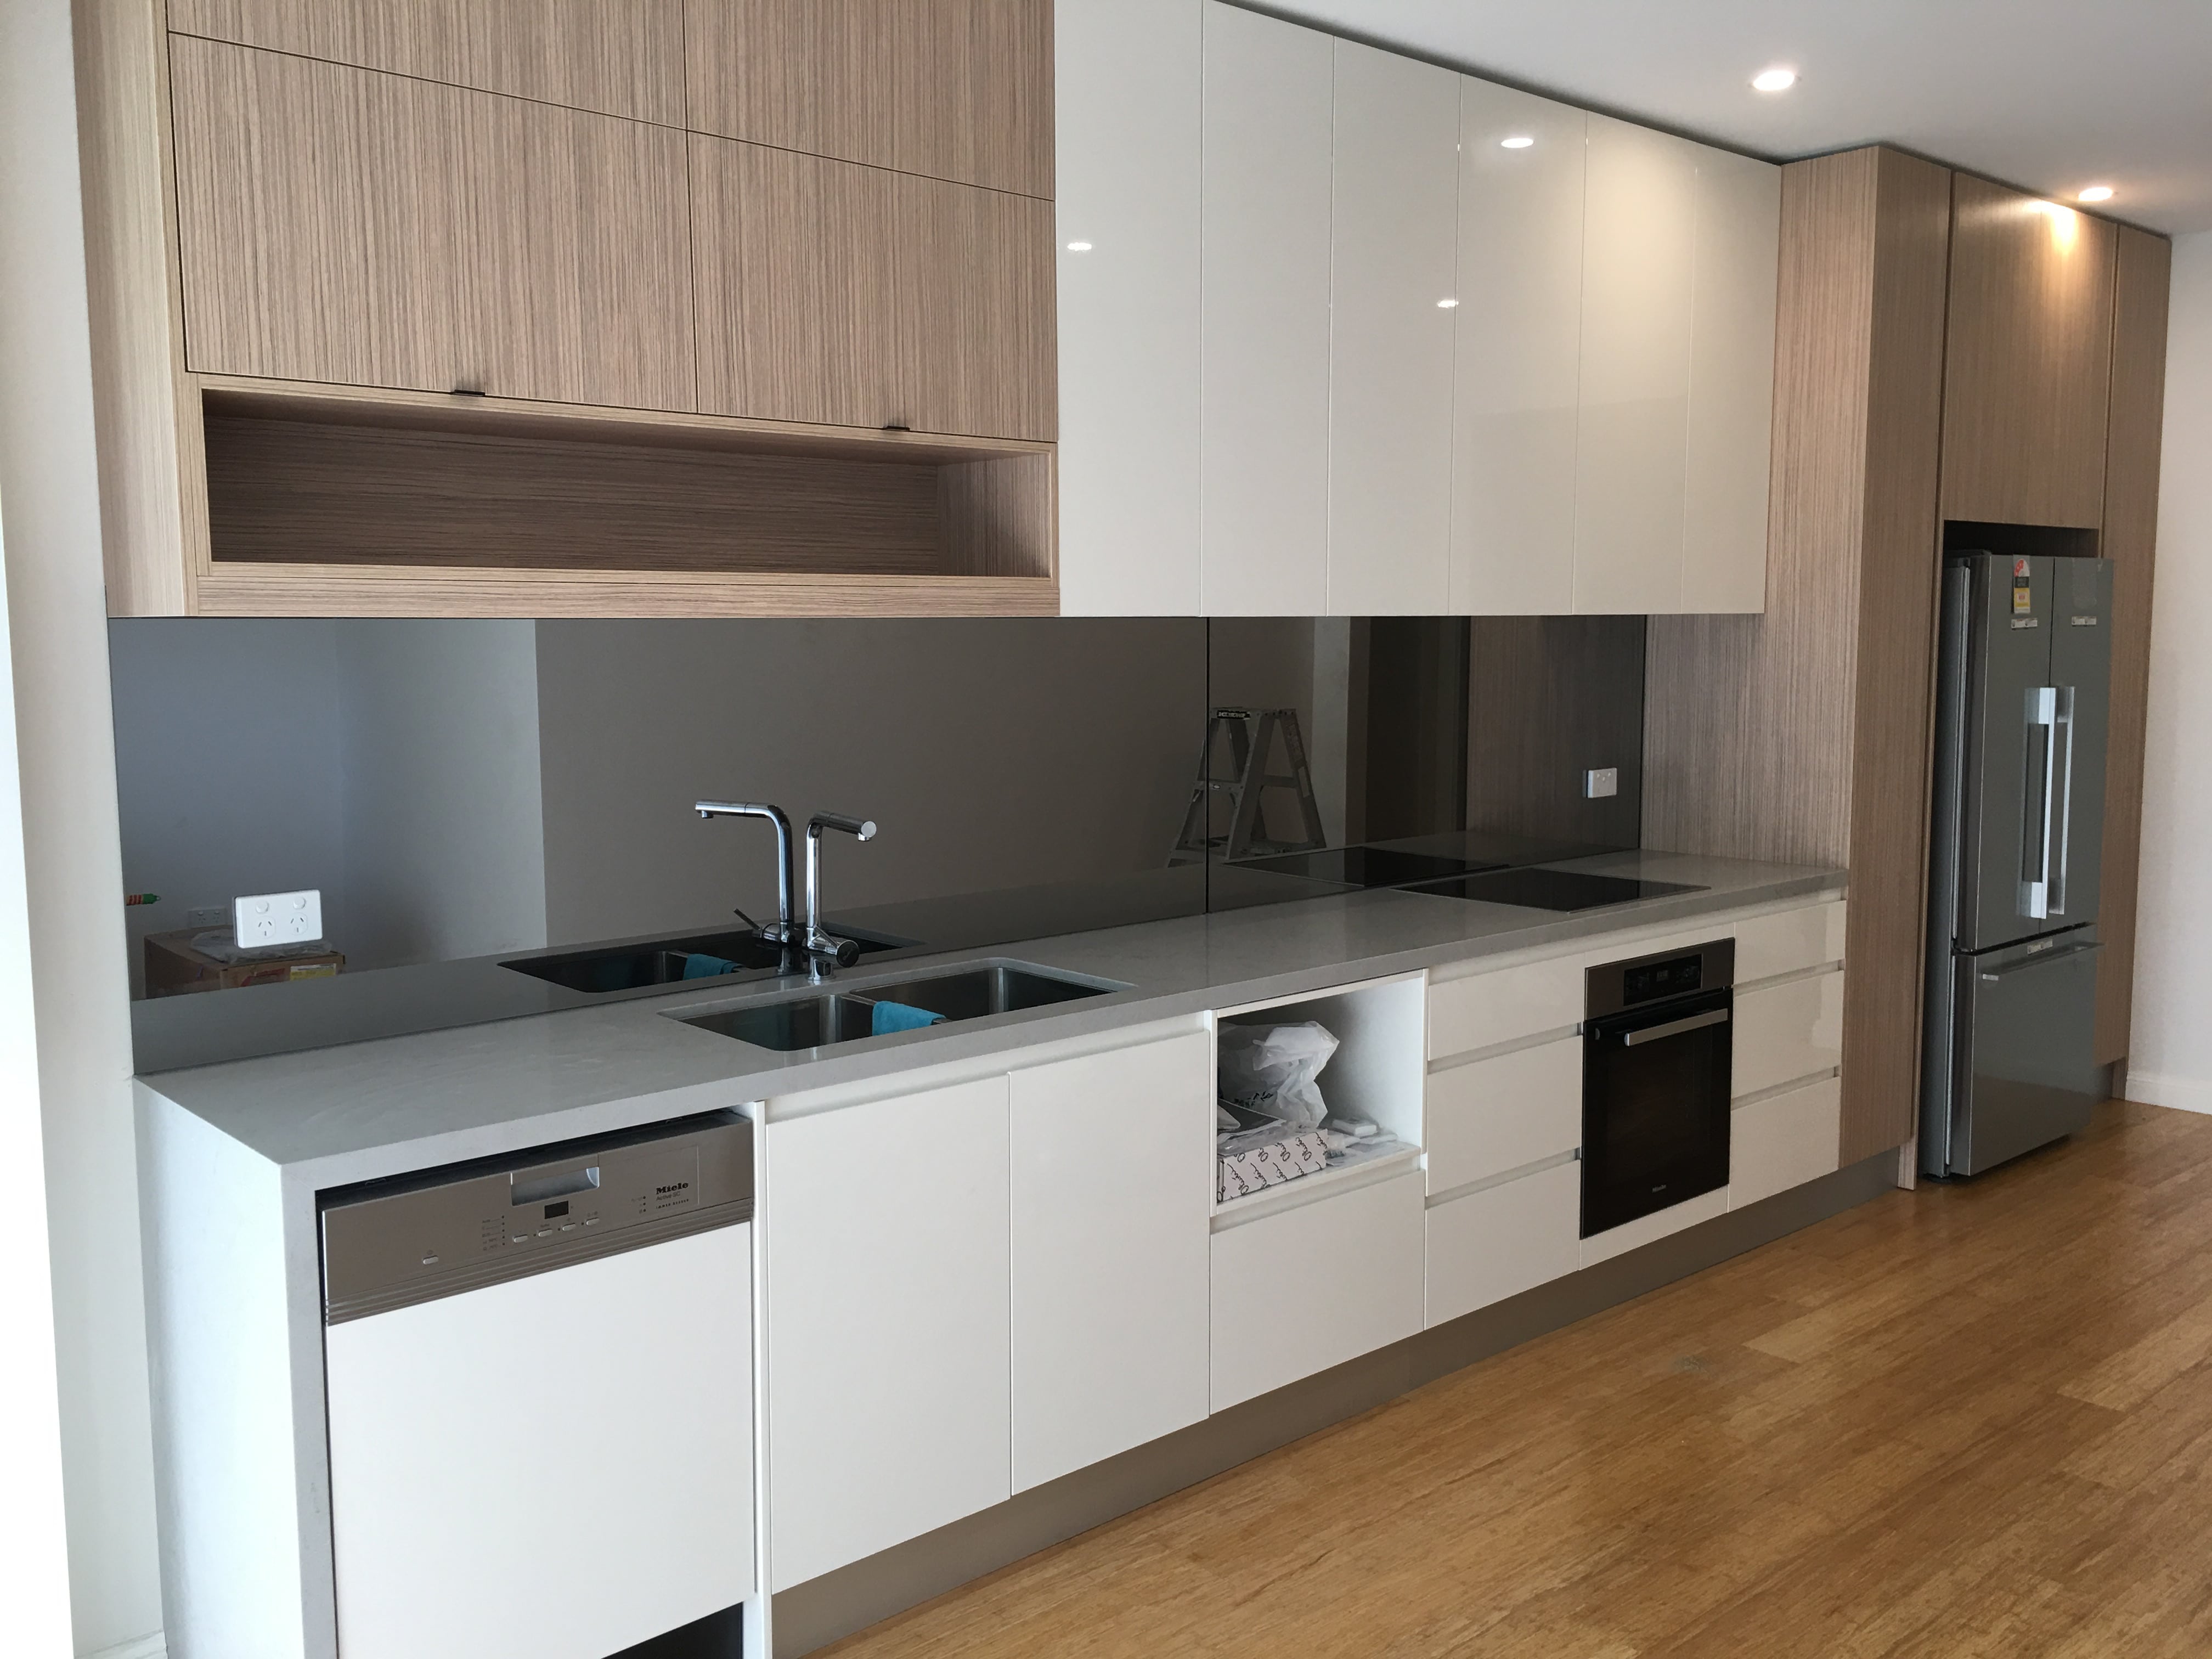 design of modern kitchen cabinet